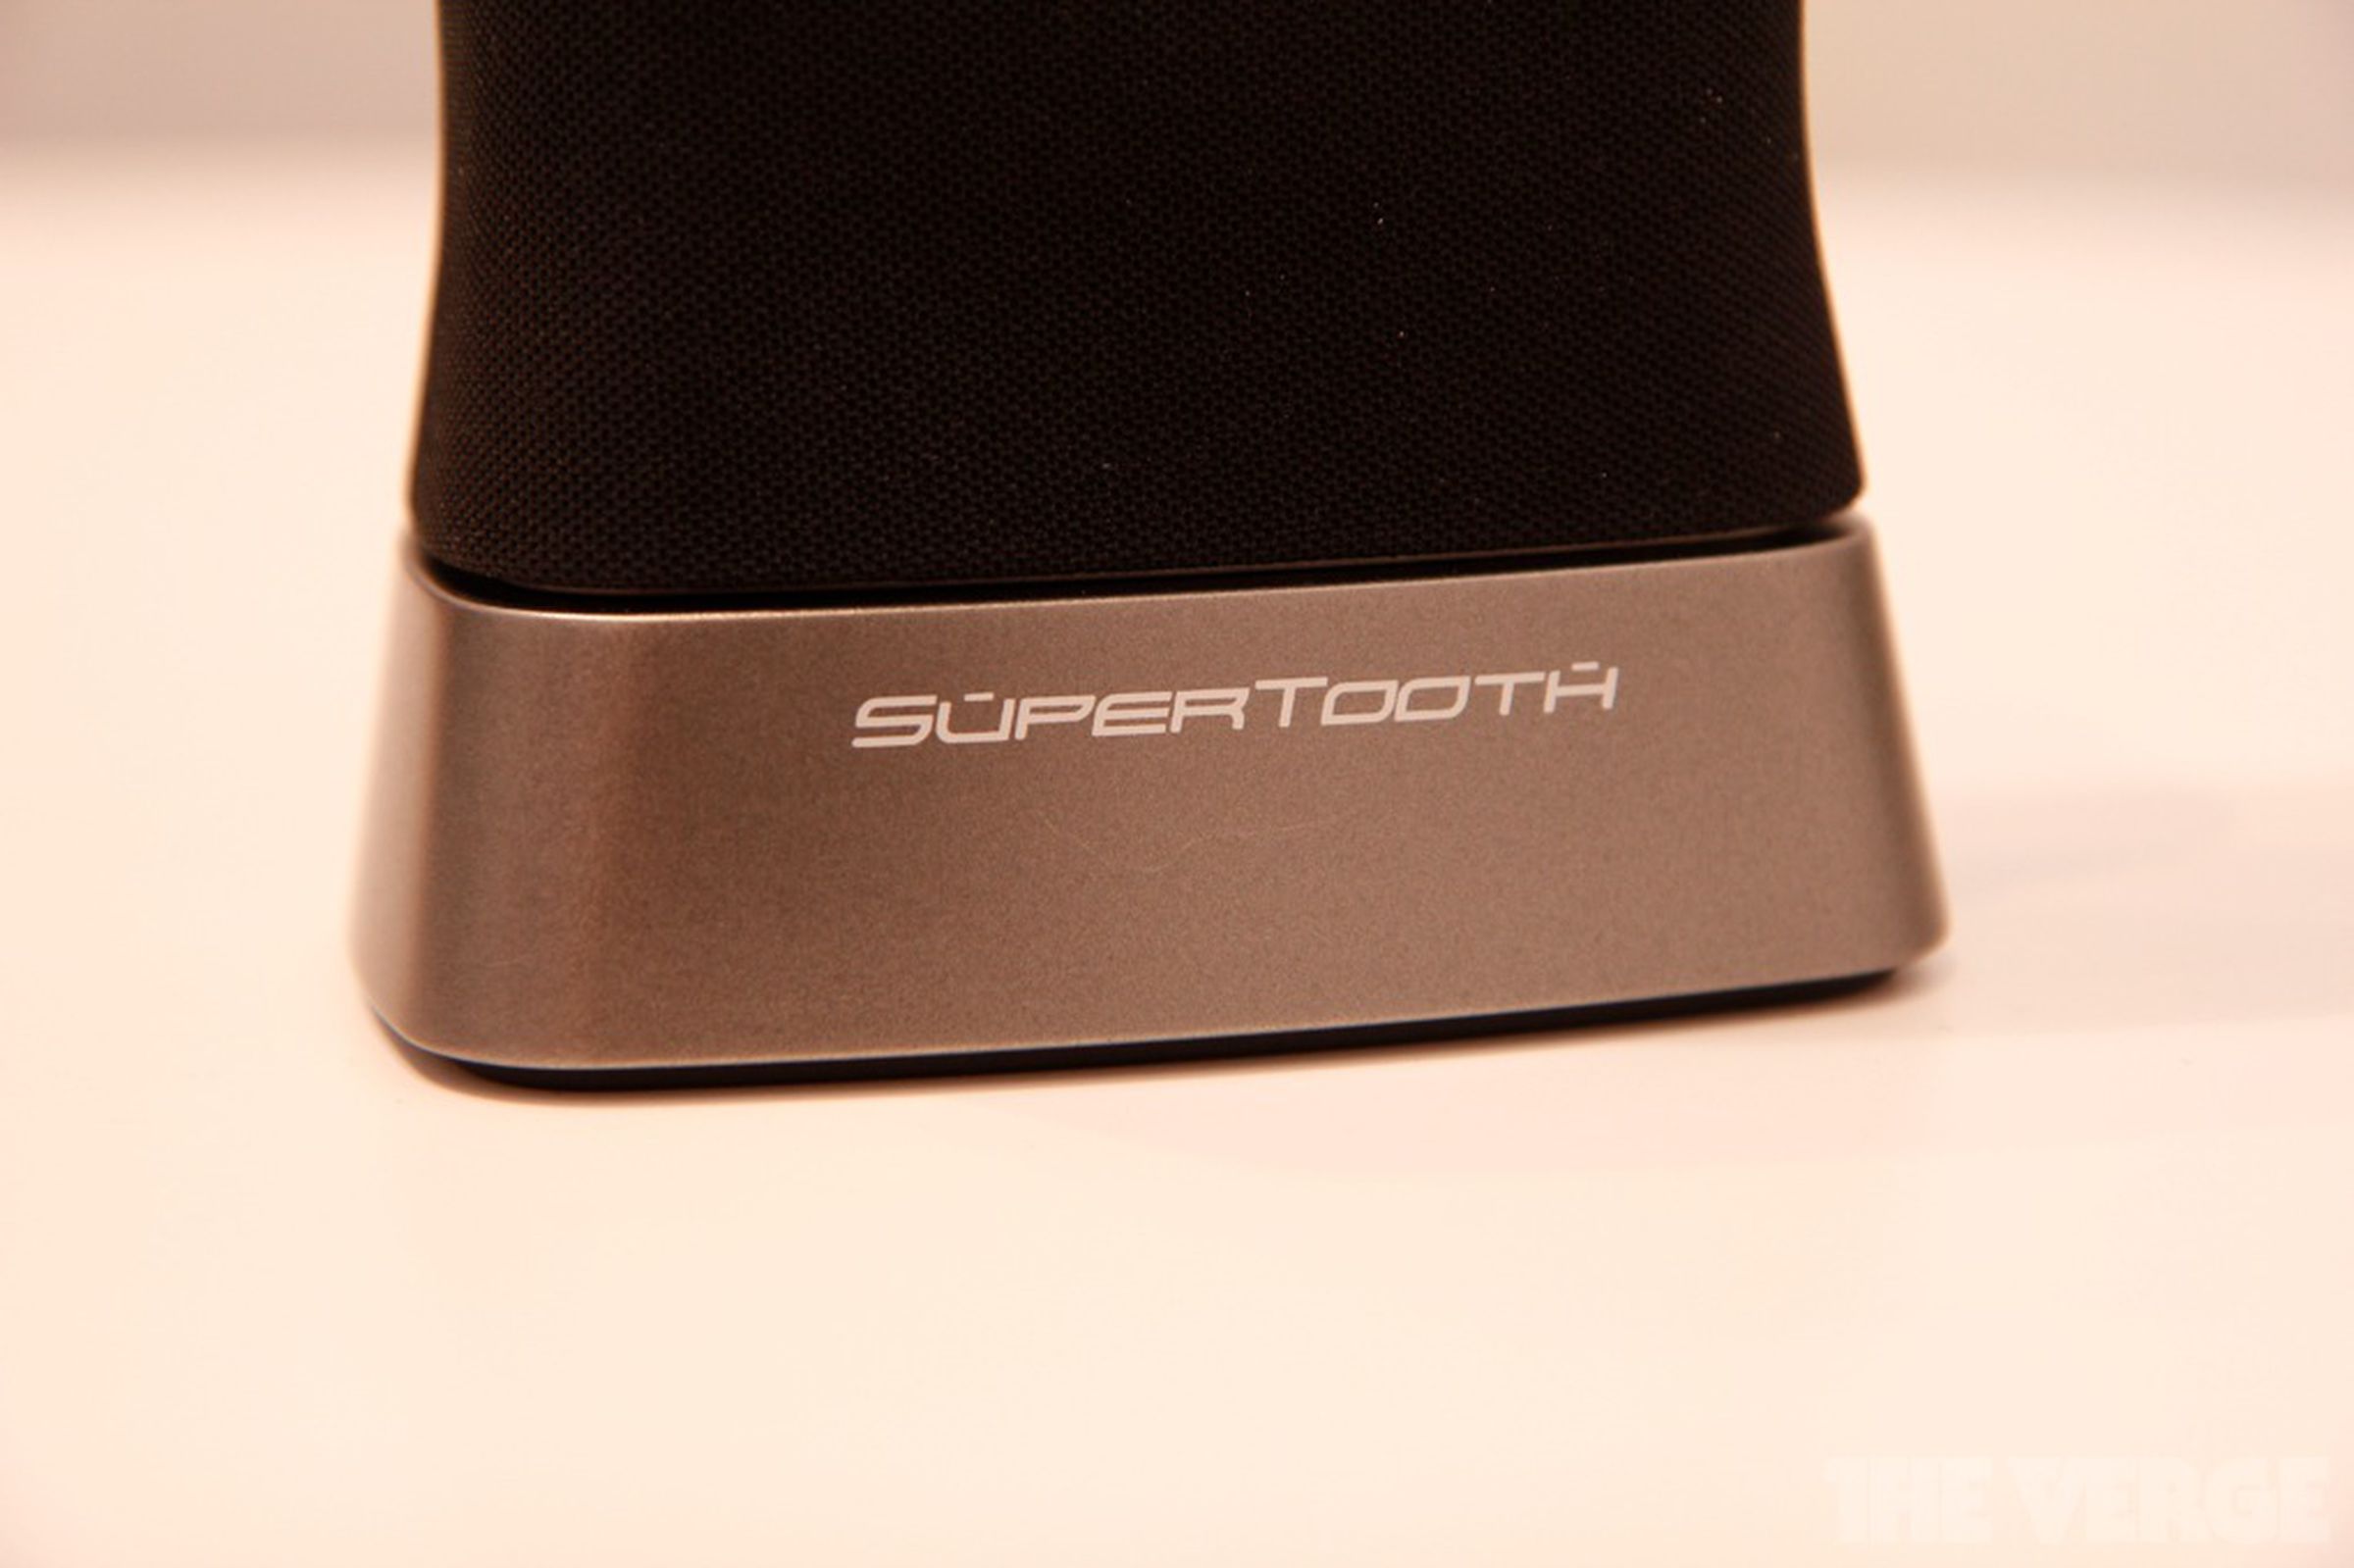 SuperTooth Disco 2 bluetooth speaker pictures